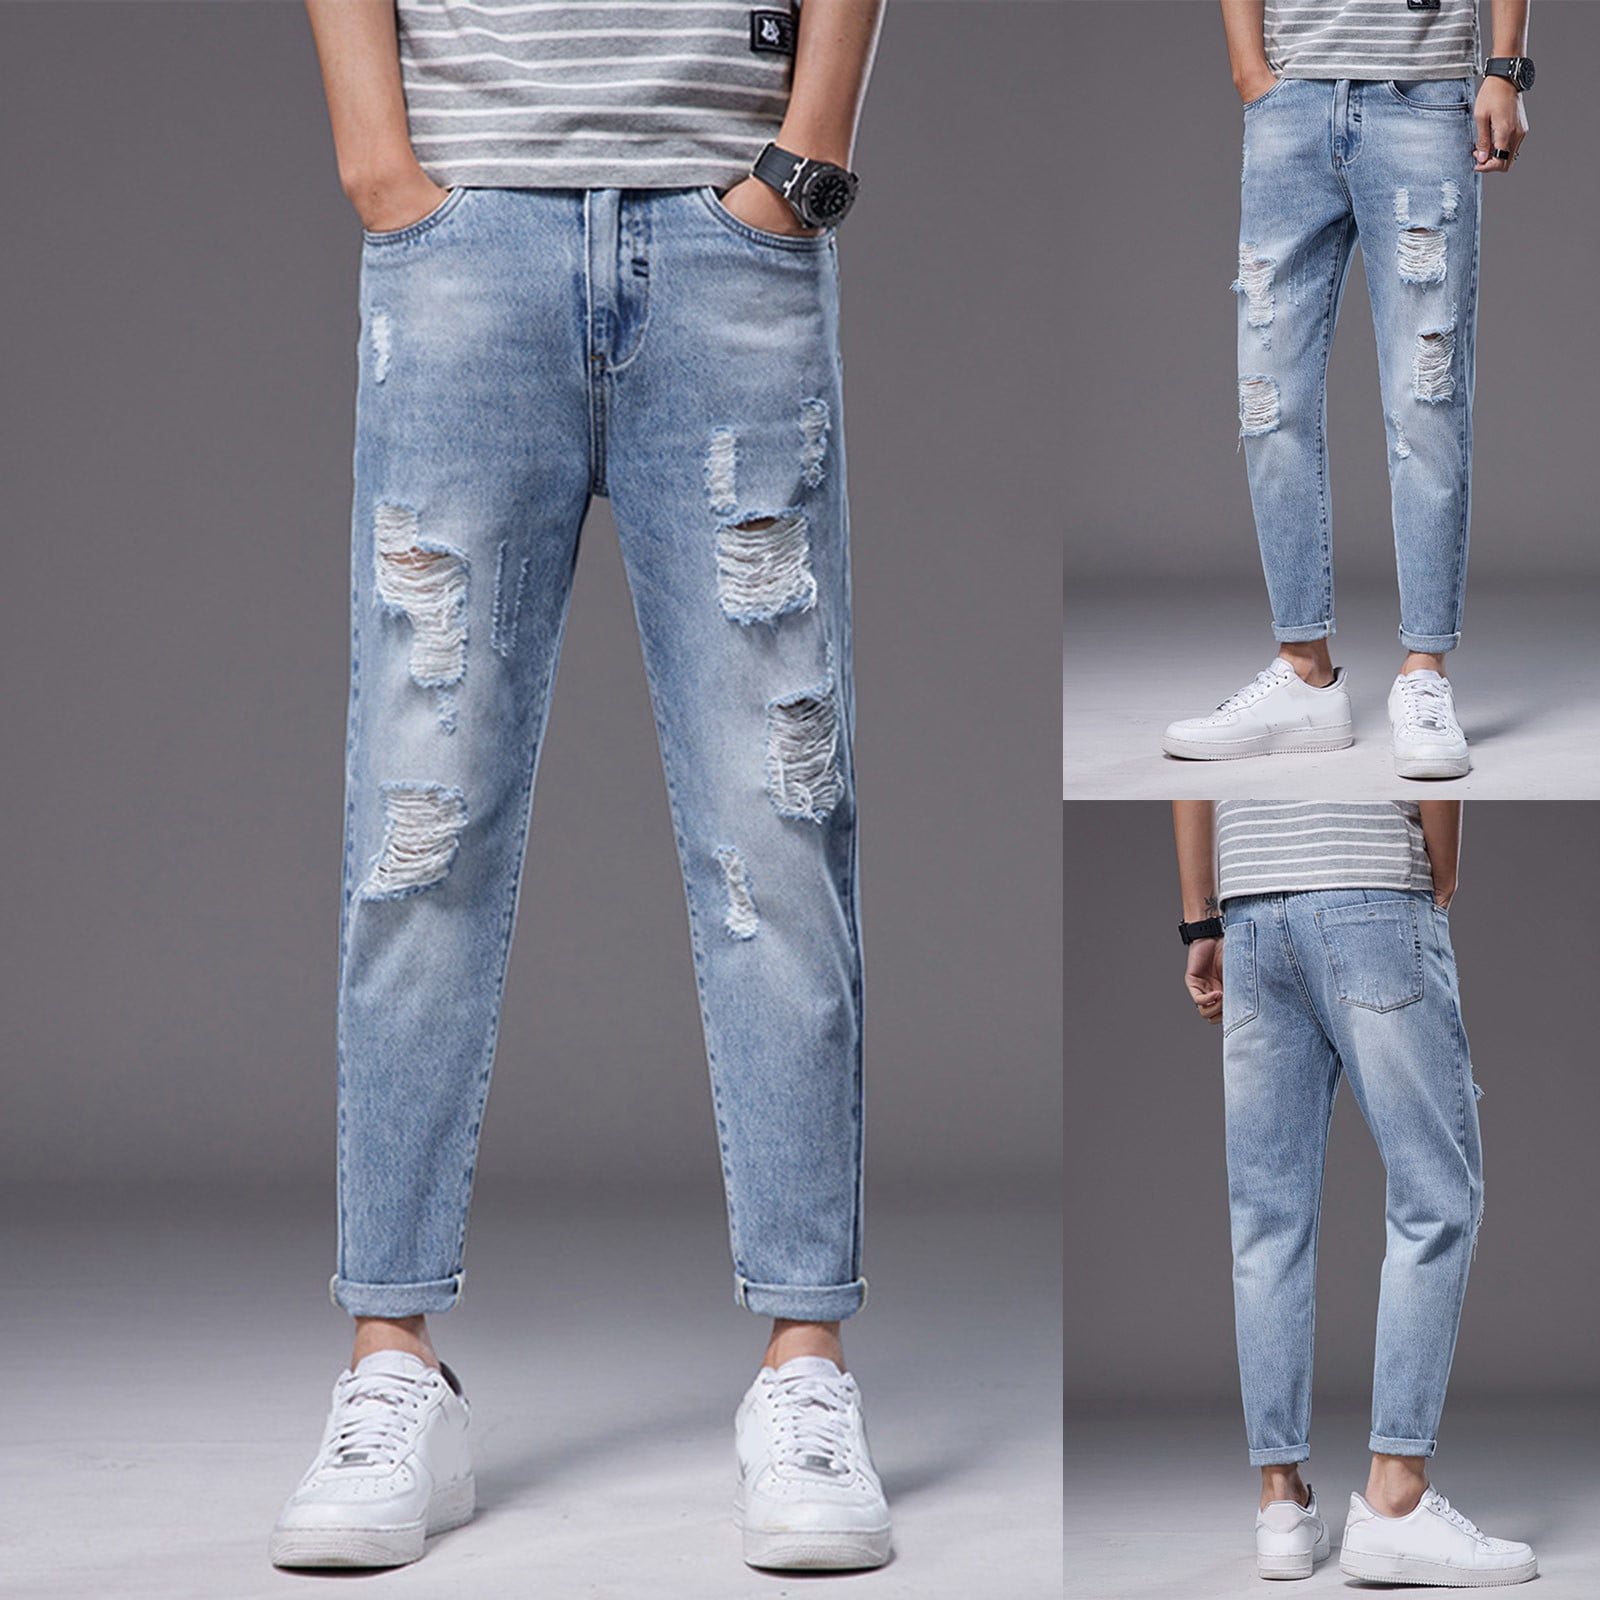 Men Slant Pocket Straight Leg Jeans | Denim outfit men, Stylish jeans, Pants  outfit men